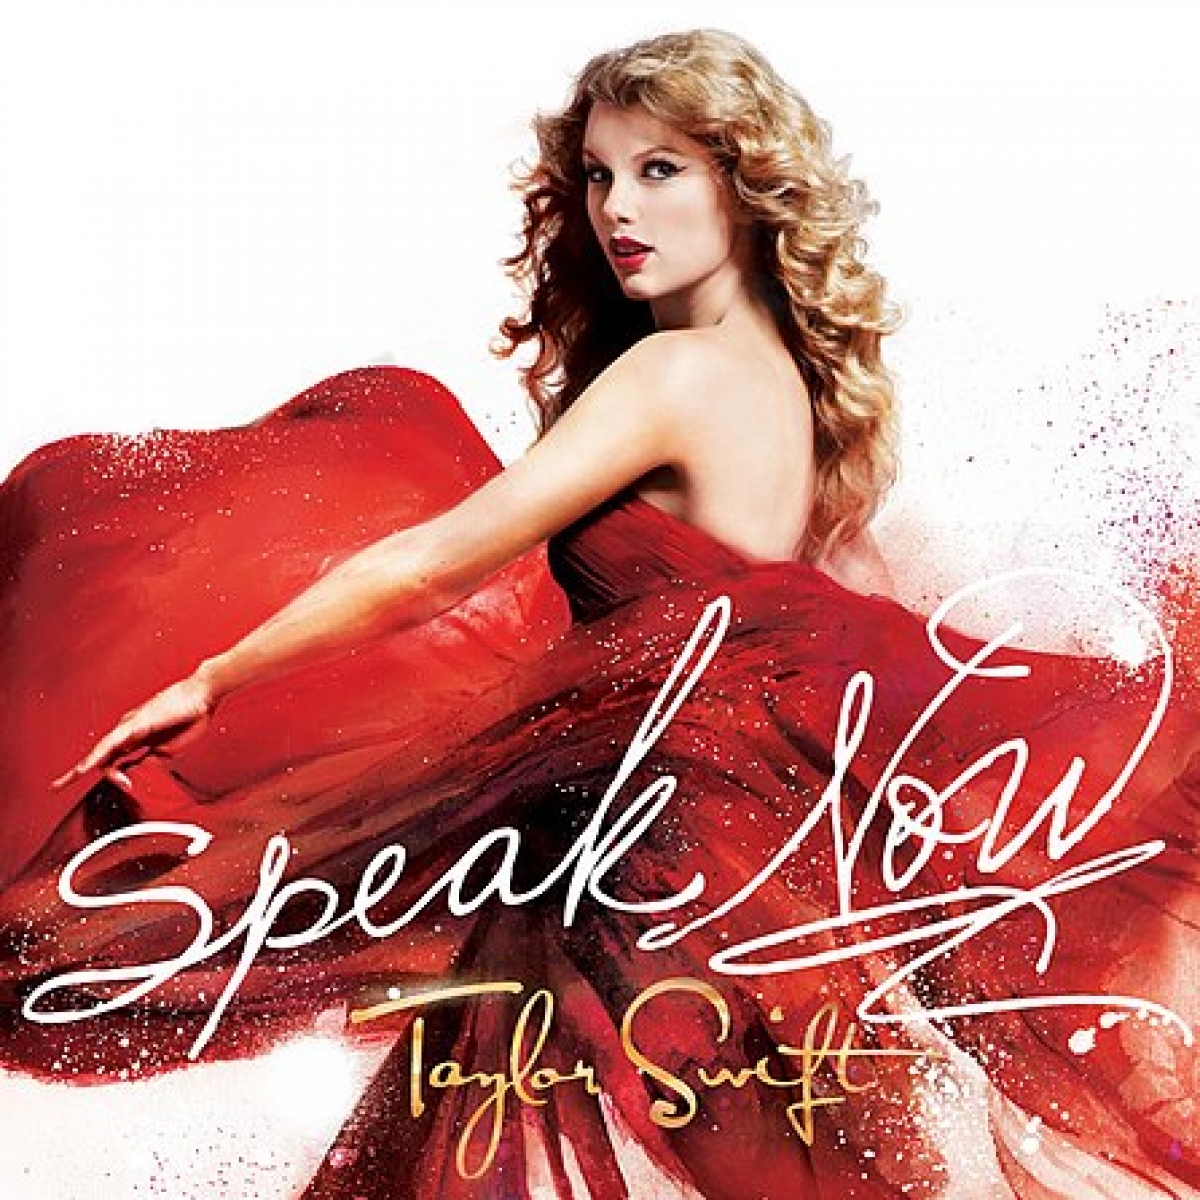 Taylor Swift làm mới "Speak Now", tiếp tục khẳng định tài năng âm nhạc xuất sắc